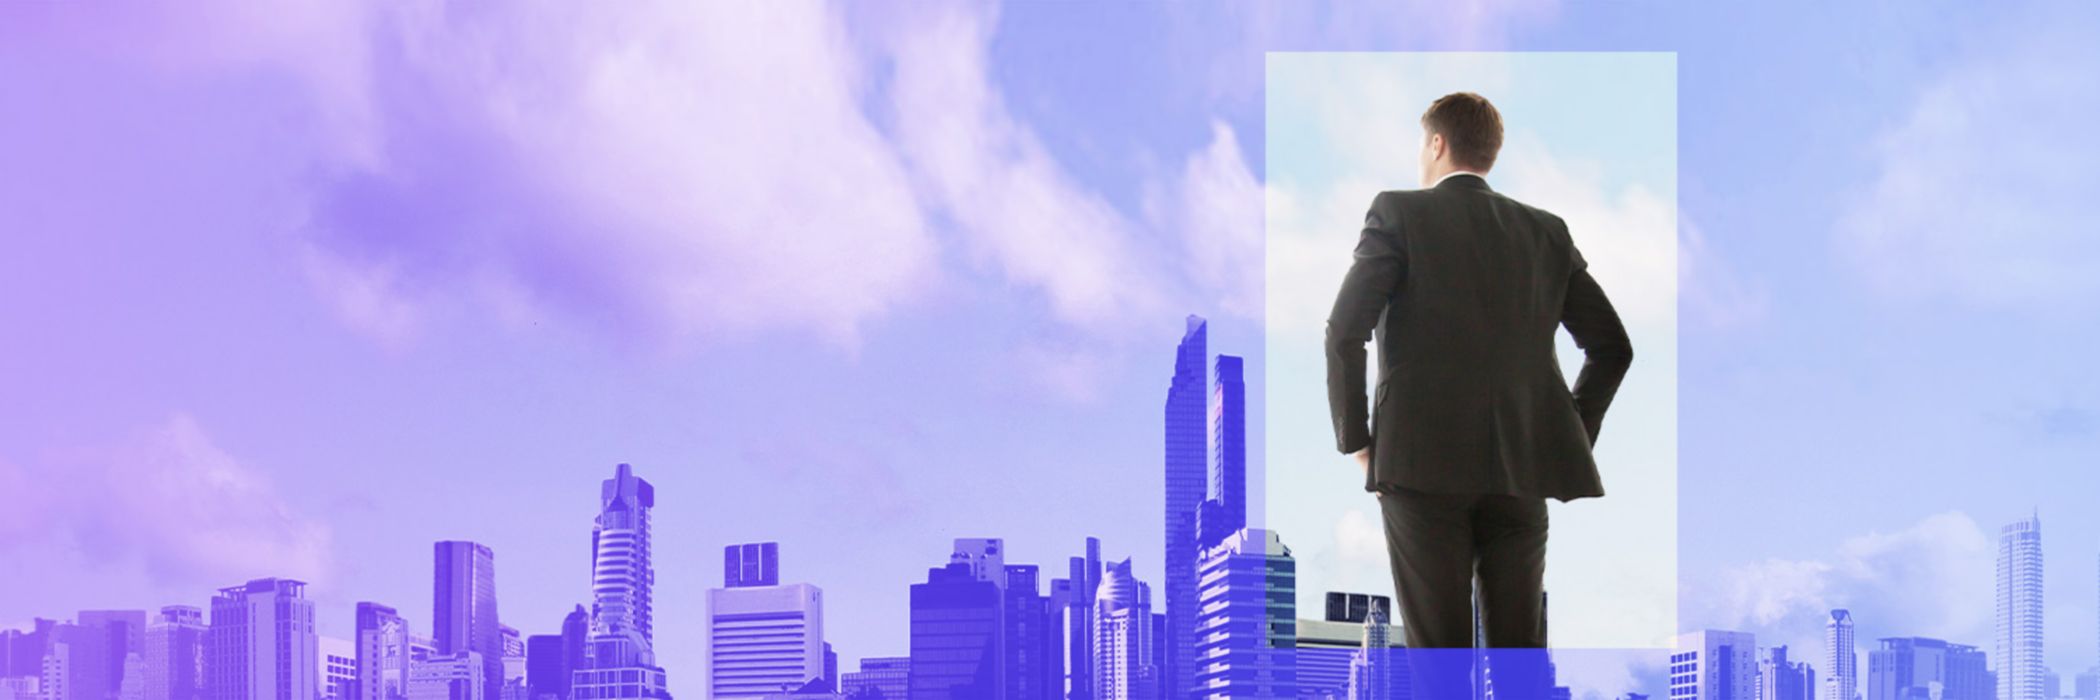 Gesamtbanksteuerung Mann in Anzug blickt auf Skyline